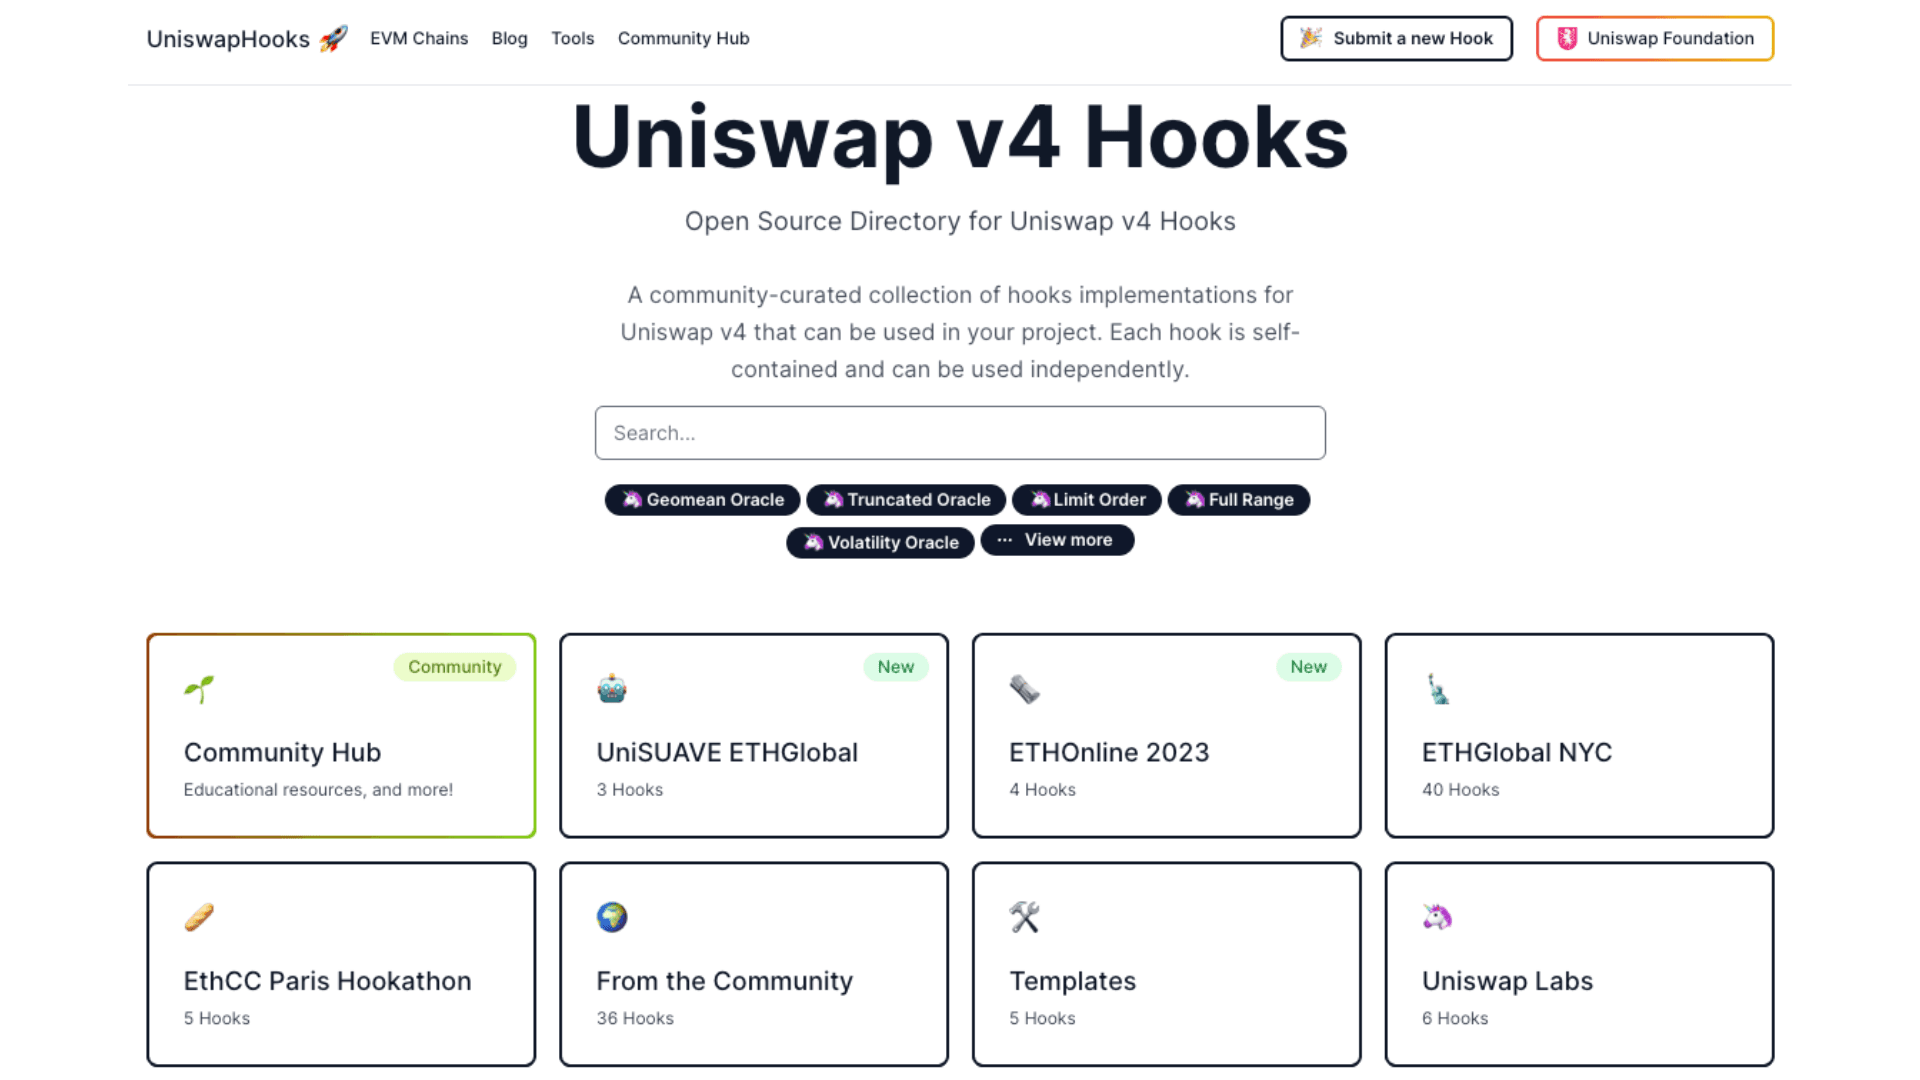 Open Source Directory for Uniswap V4 Hooks